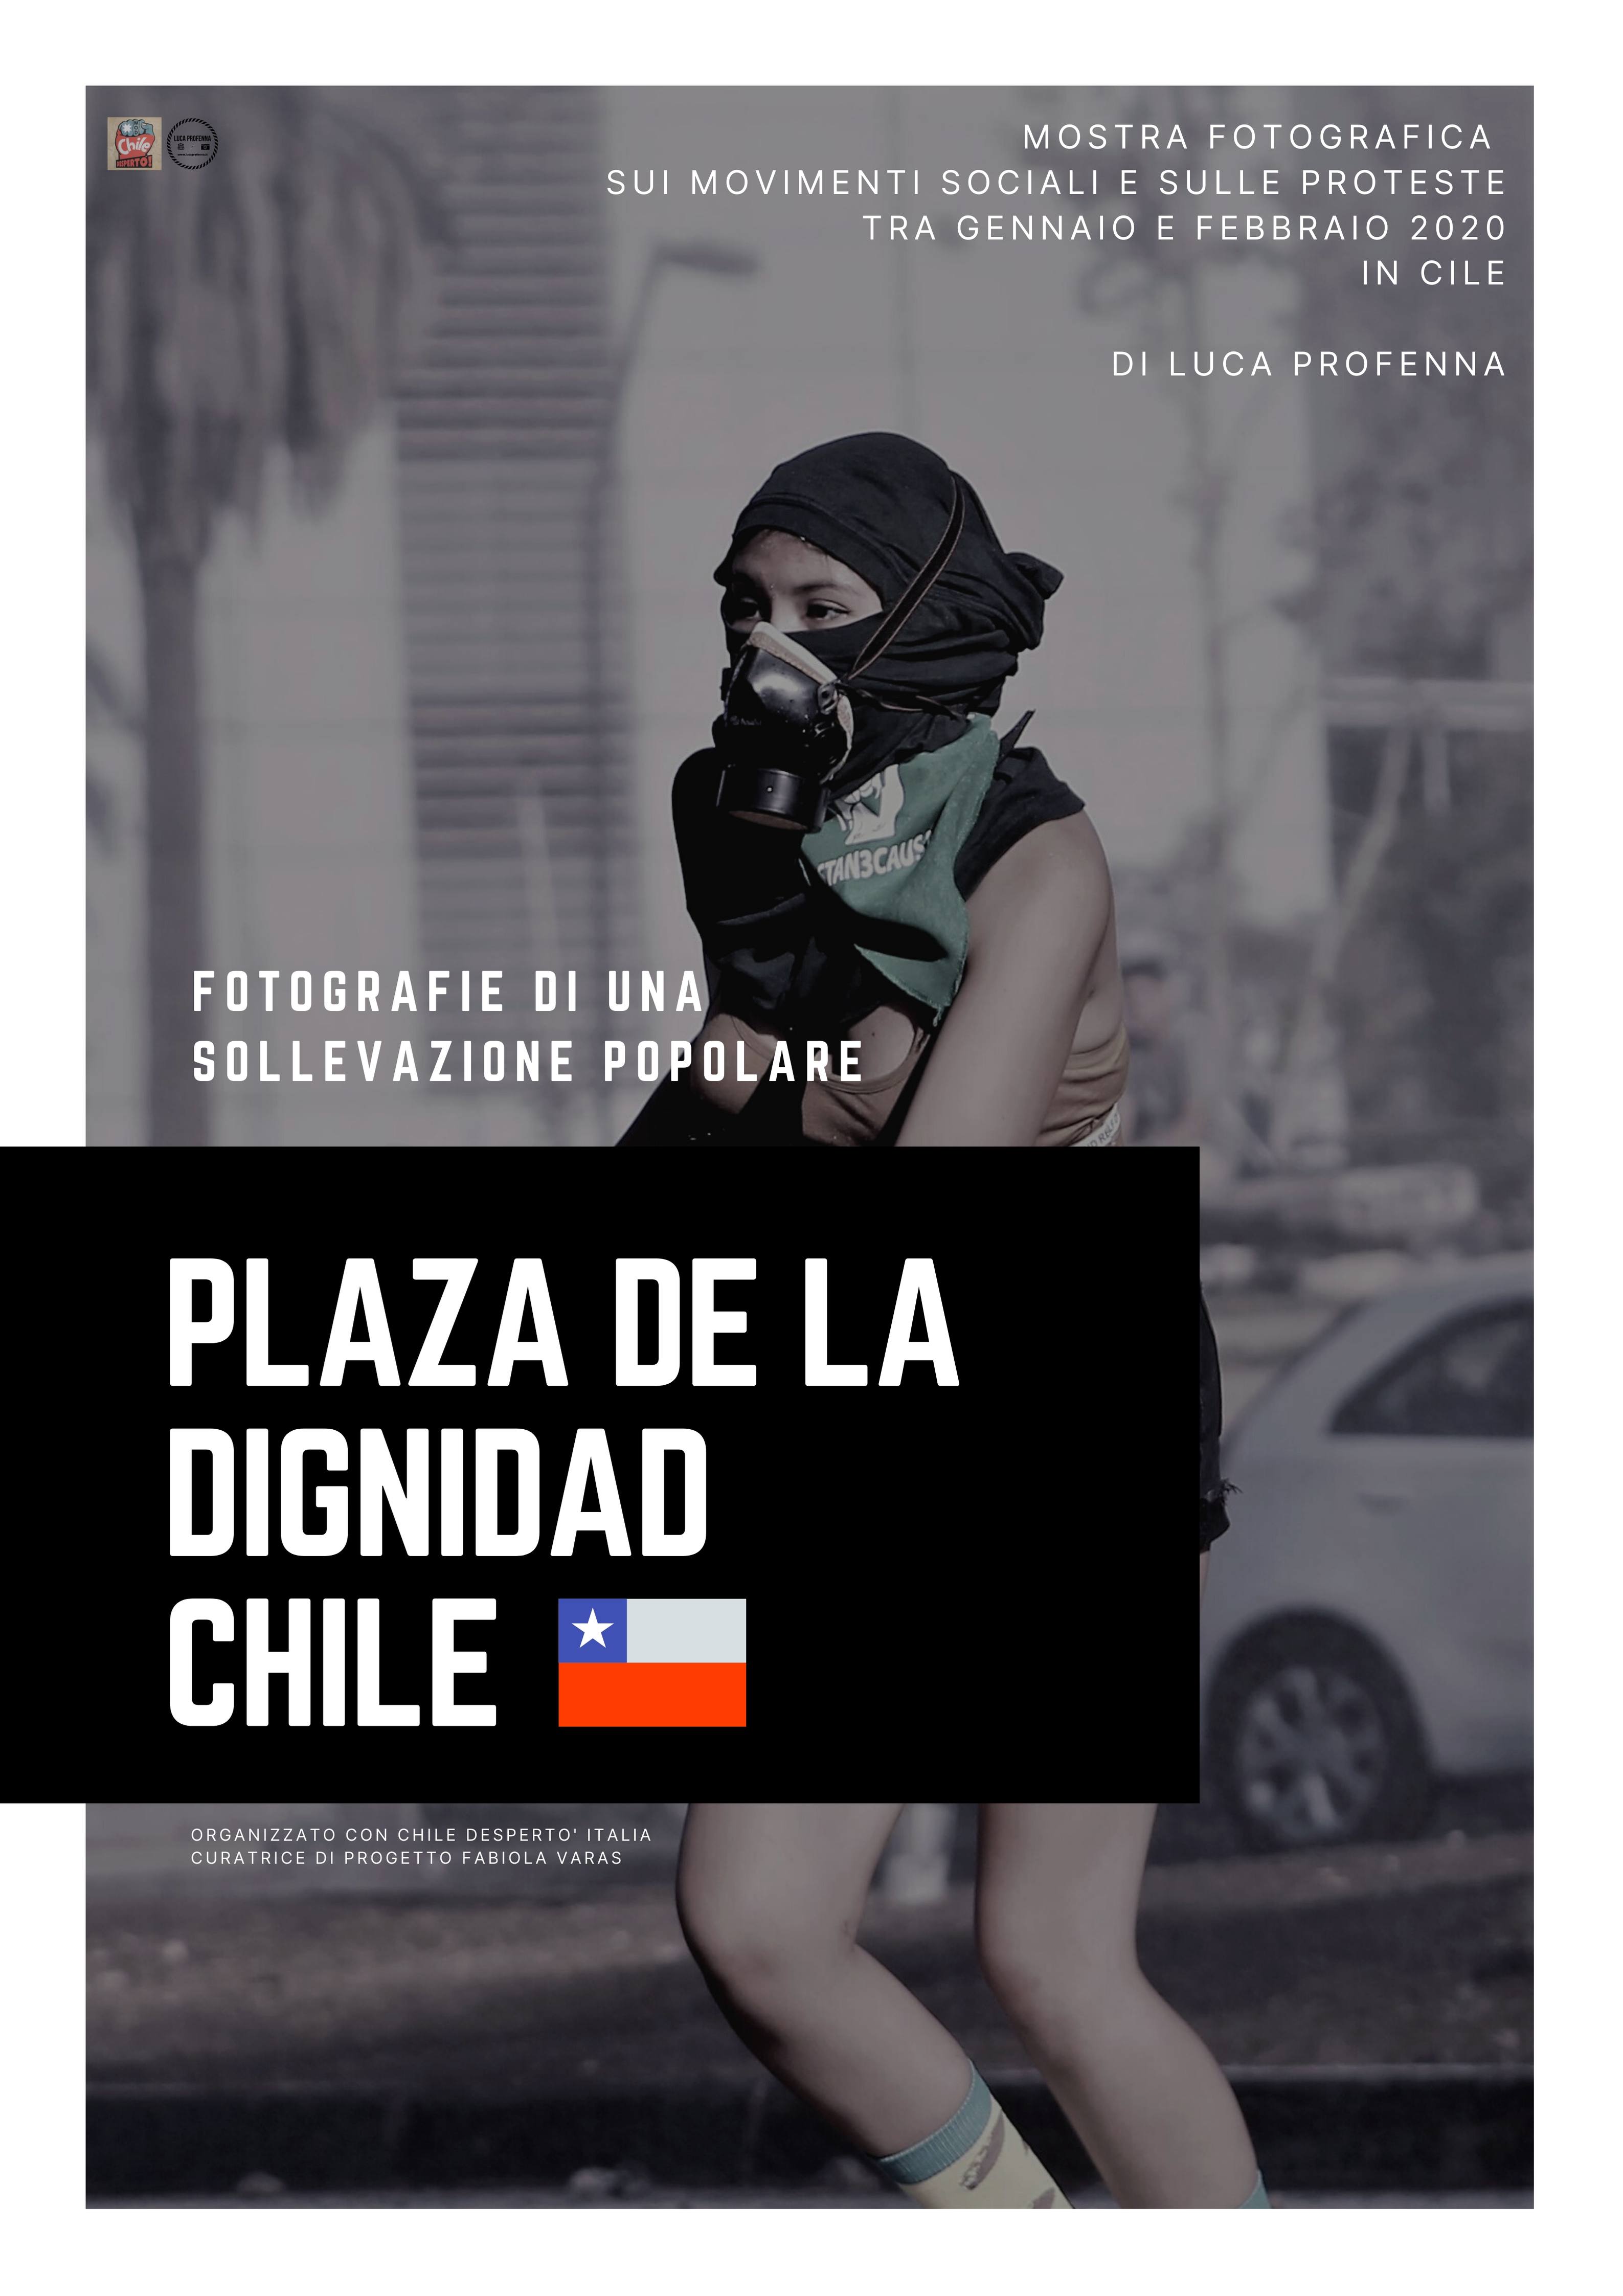 Mostra Fotografica Plaza De La Dignidad-Chile
Fotografie di una sollevazione popolare